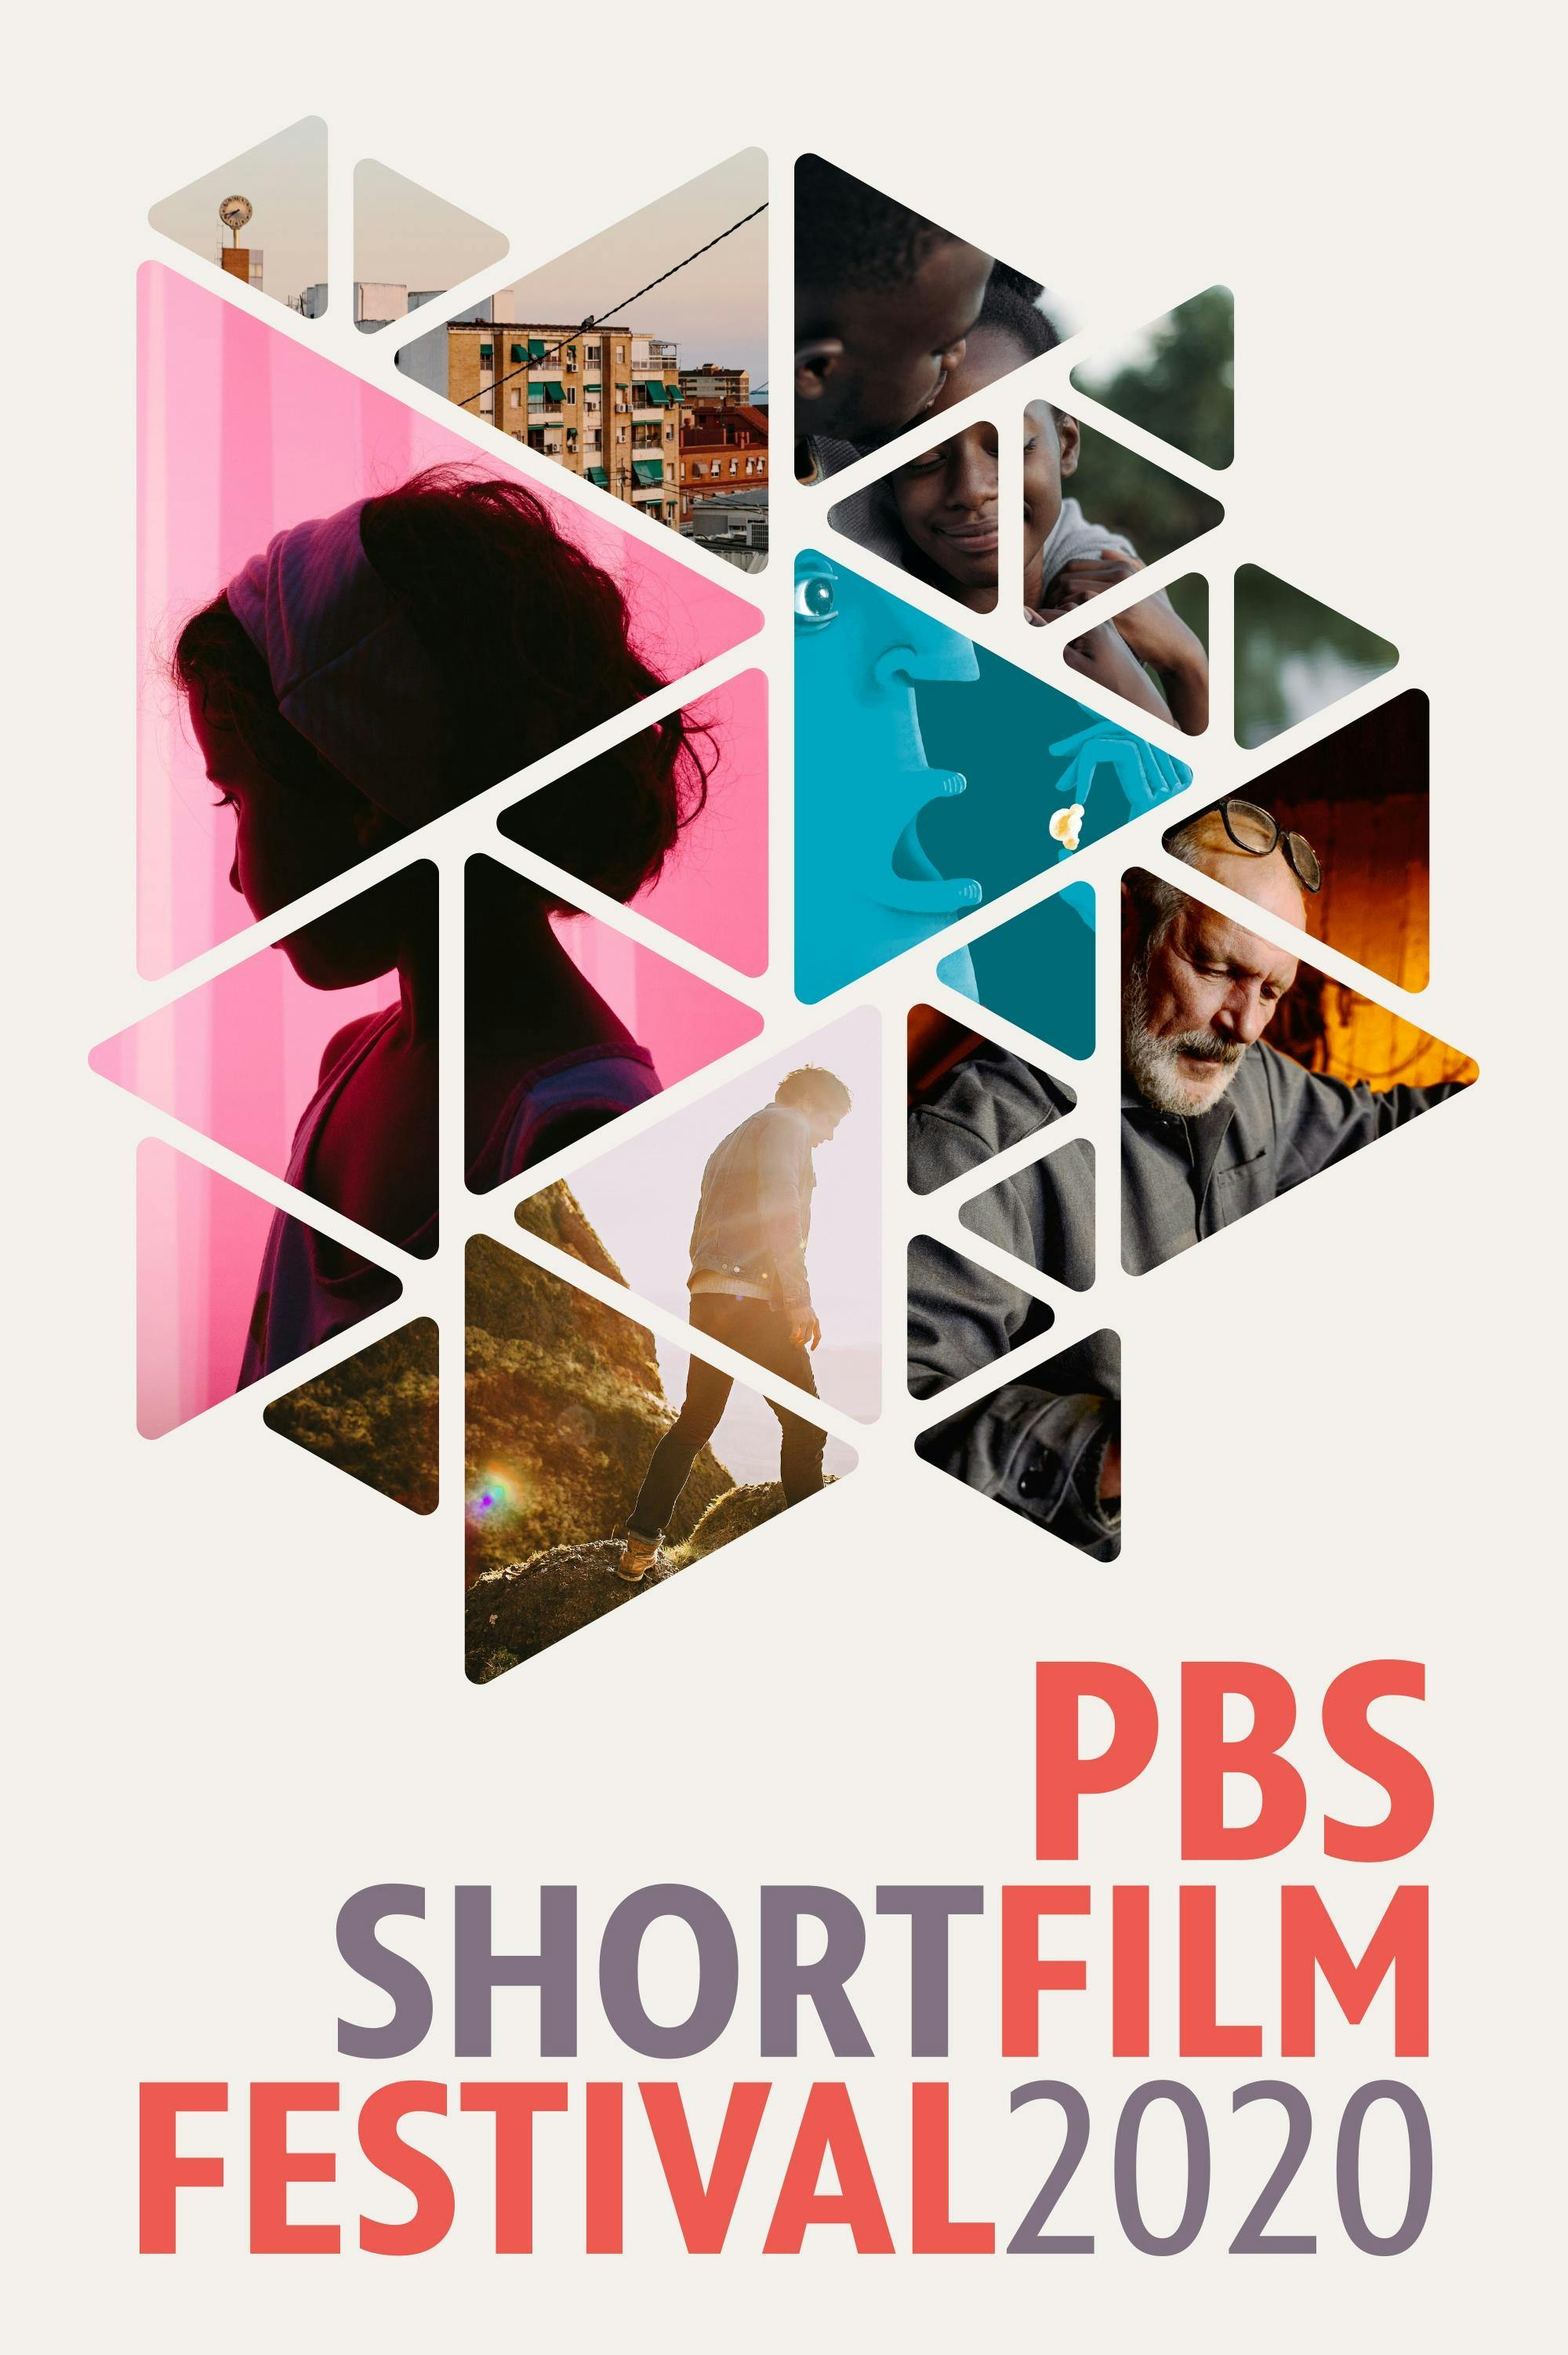 PBS Short Film Festival ATLPBA